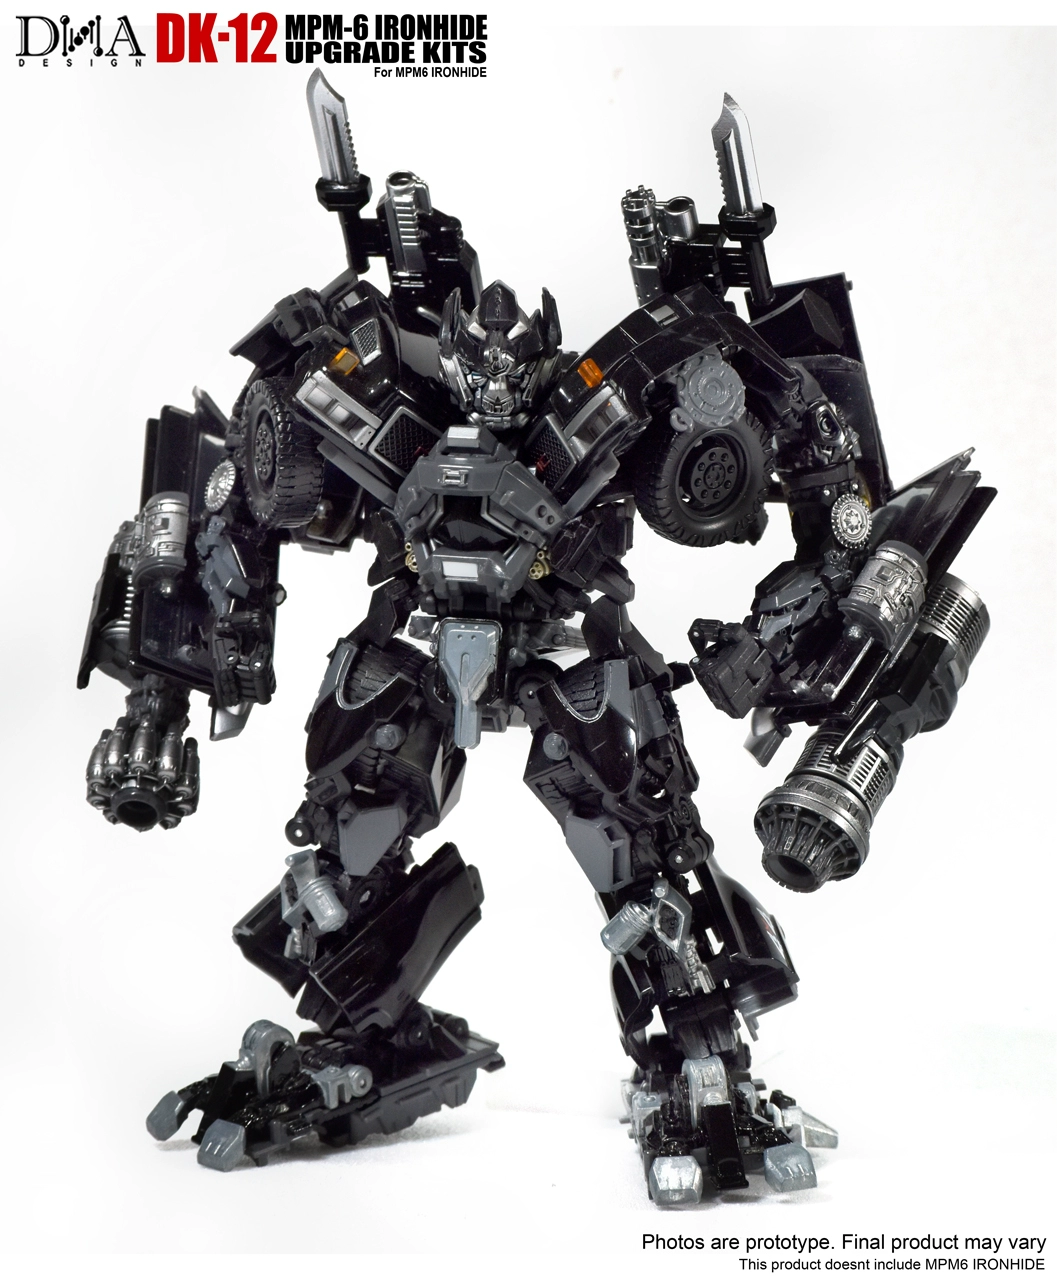 DNA của bên thứ ba đã sản xuất các phụ kiện bằng sắt mpm06DK-12 bao gồm trang trí mô hình đặc biệt lần đầu tiên - Gundam / Mech Model / Robot / Transformers